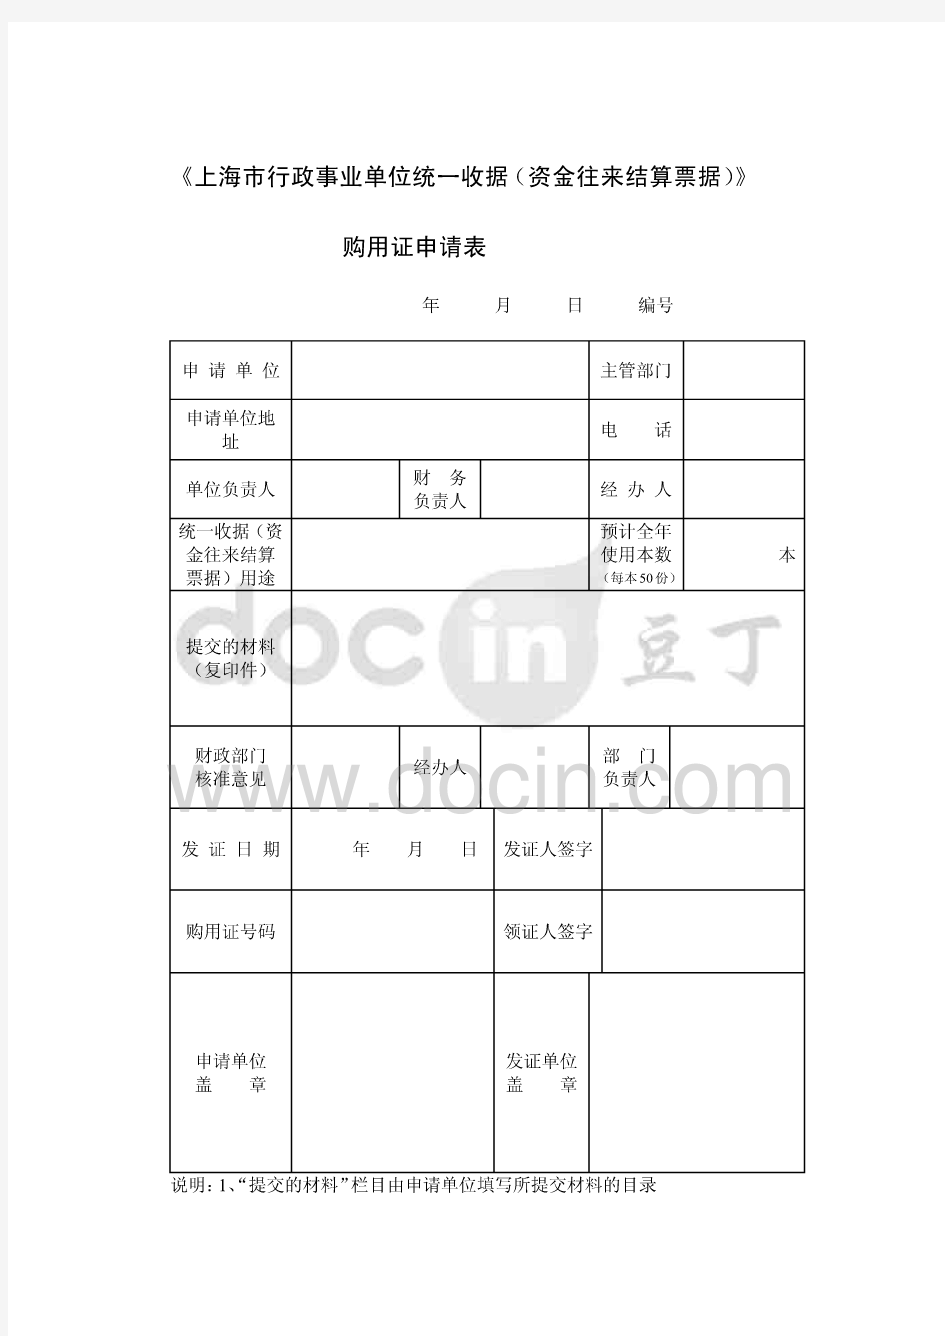 上海市行政事业单位统一收据资金往来结算票据